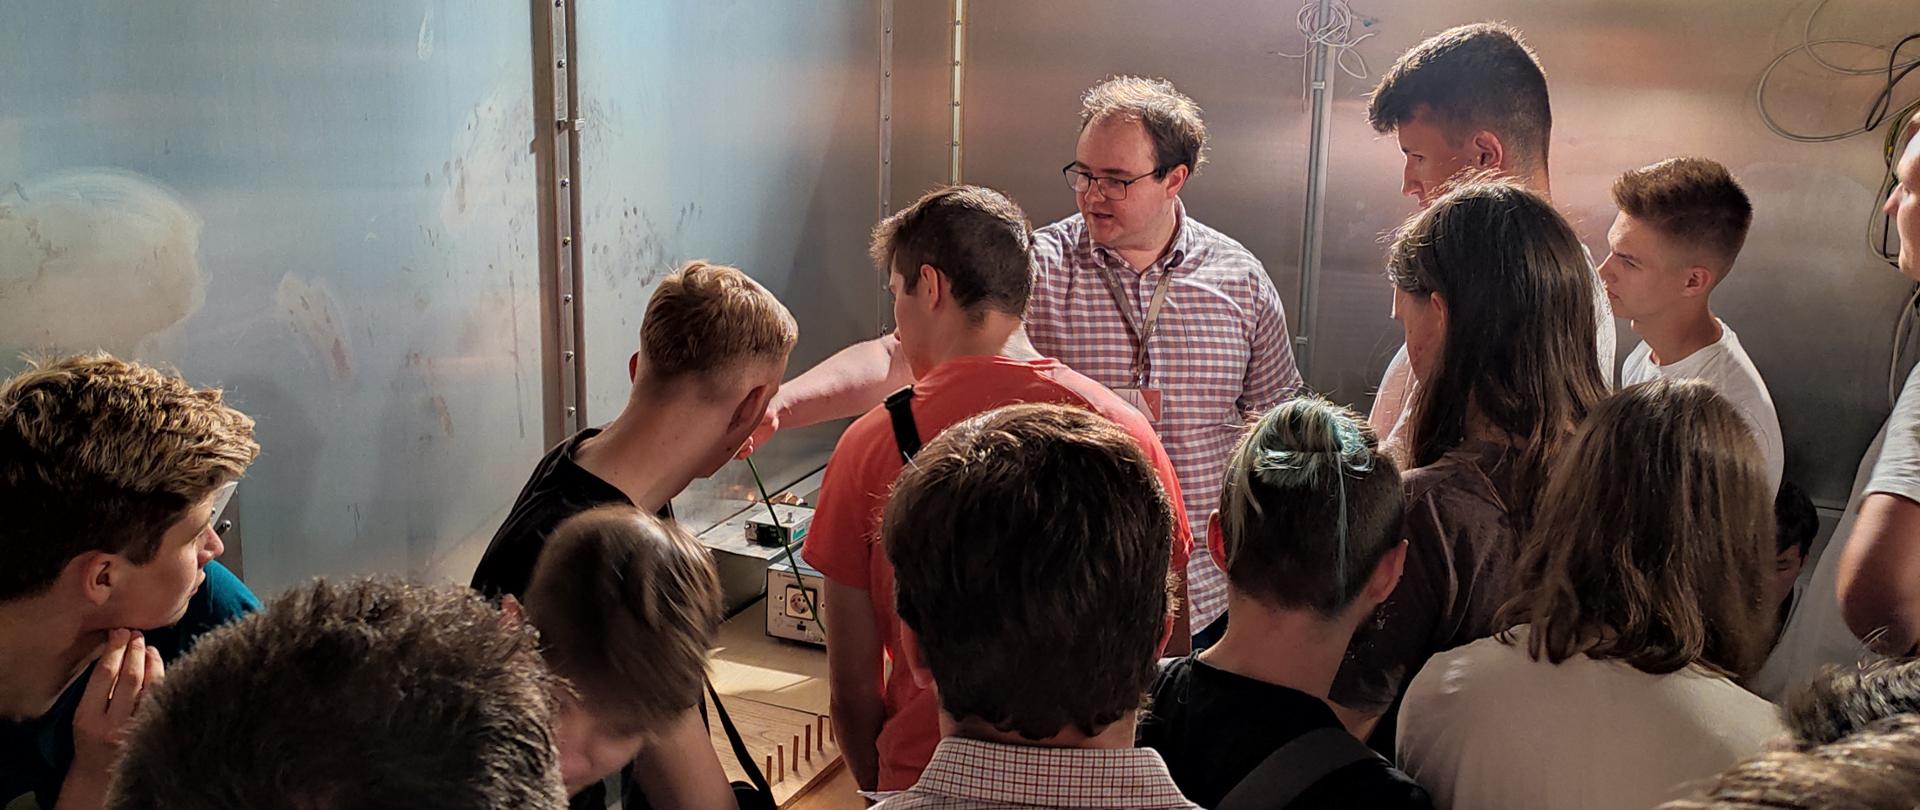 Uczniowie technikum z Łochowa podczas wizyty w Instytucie Łączności słuchają wykładu eksperta Instytutu wewnątrz klatki Faradaya.